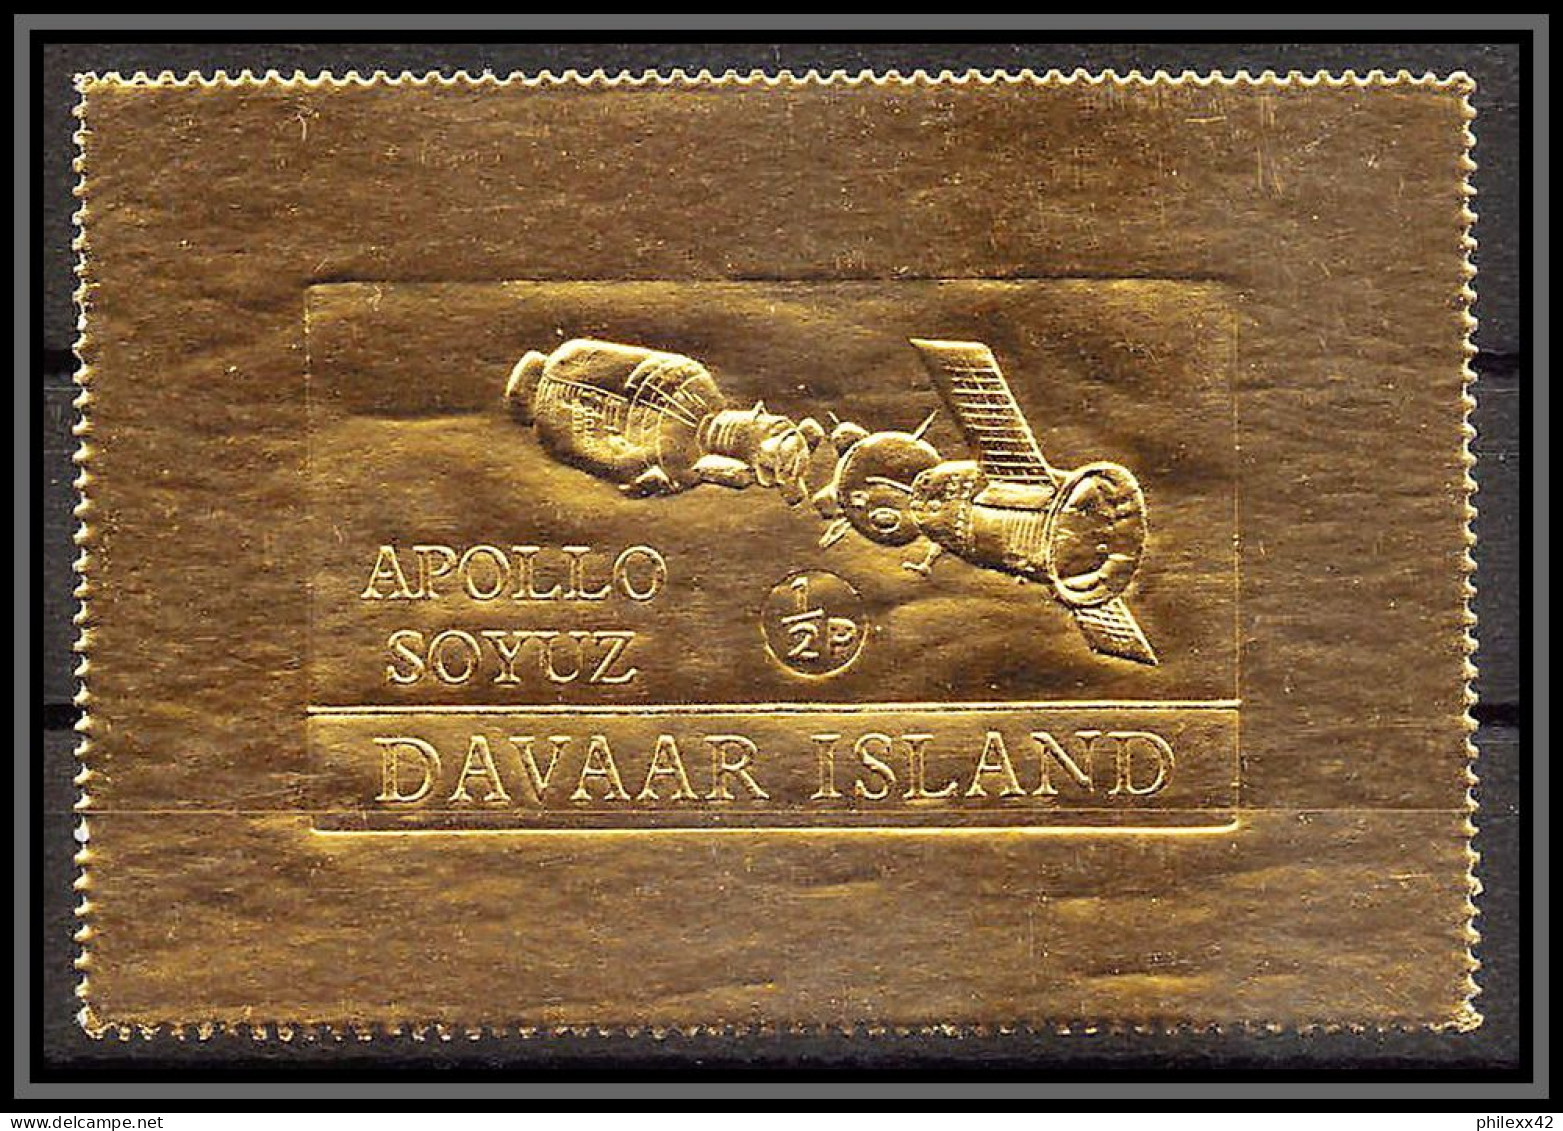 310a Davaar Scotland Apollo 1/2 P Soyuz (soyouz Sojus) Timbres OR Gold Stamps Géant Large - Escocia